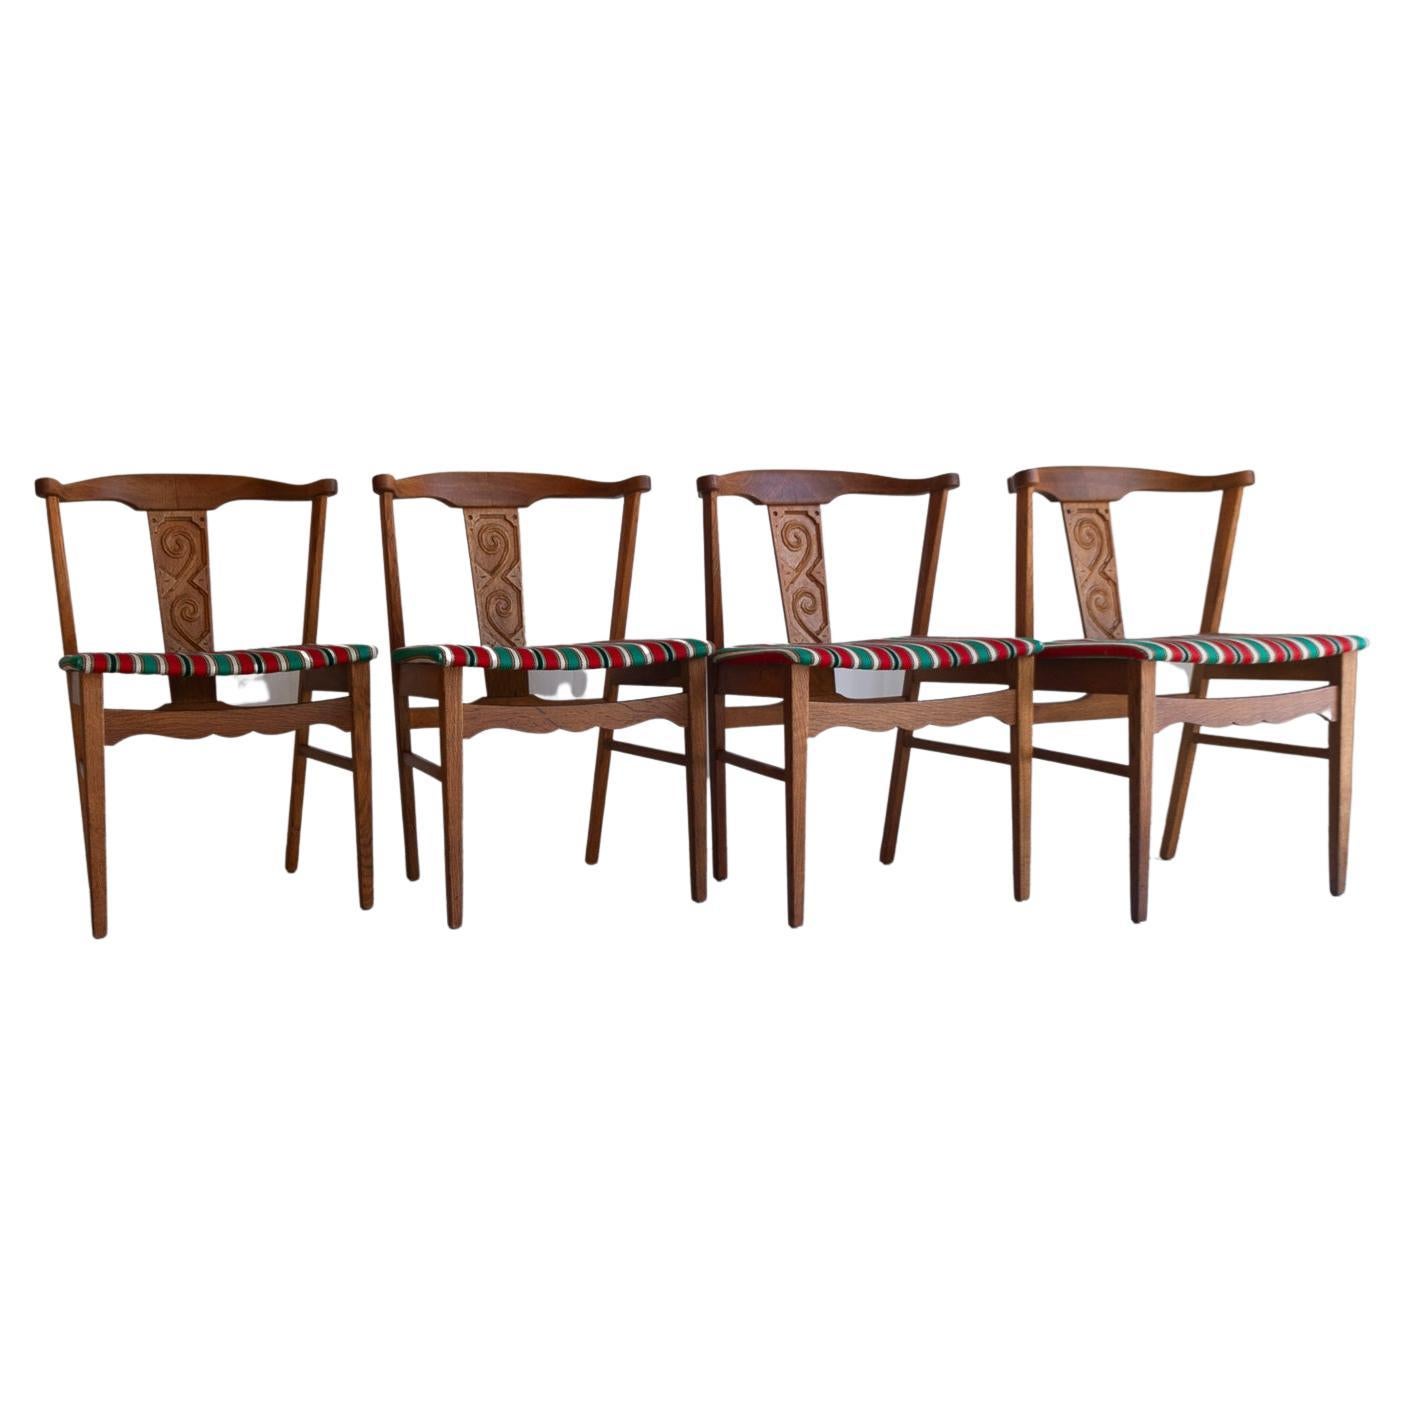 Vintage Danish Oak Dining Chairs von Kjærnulf, 1960er Jahre. Satz von 4.